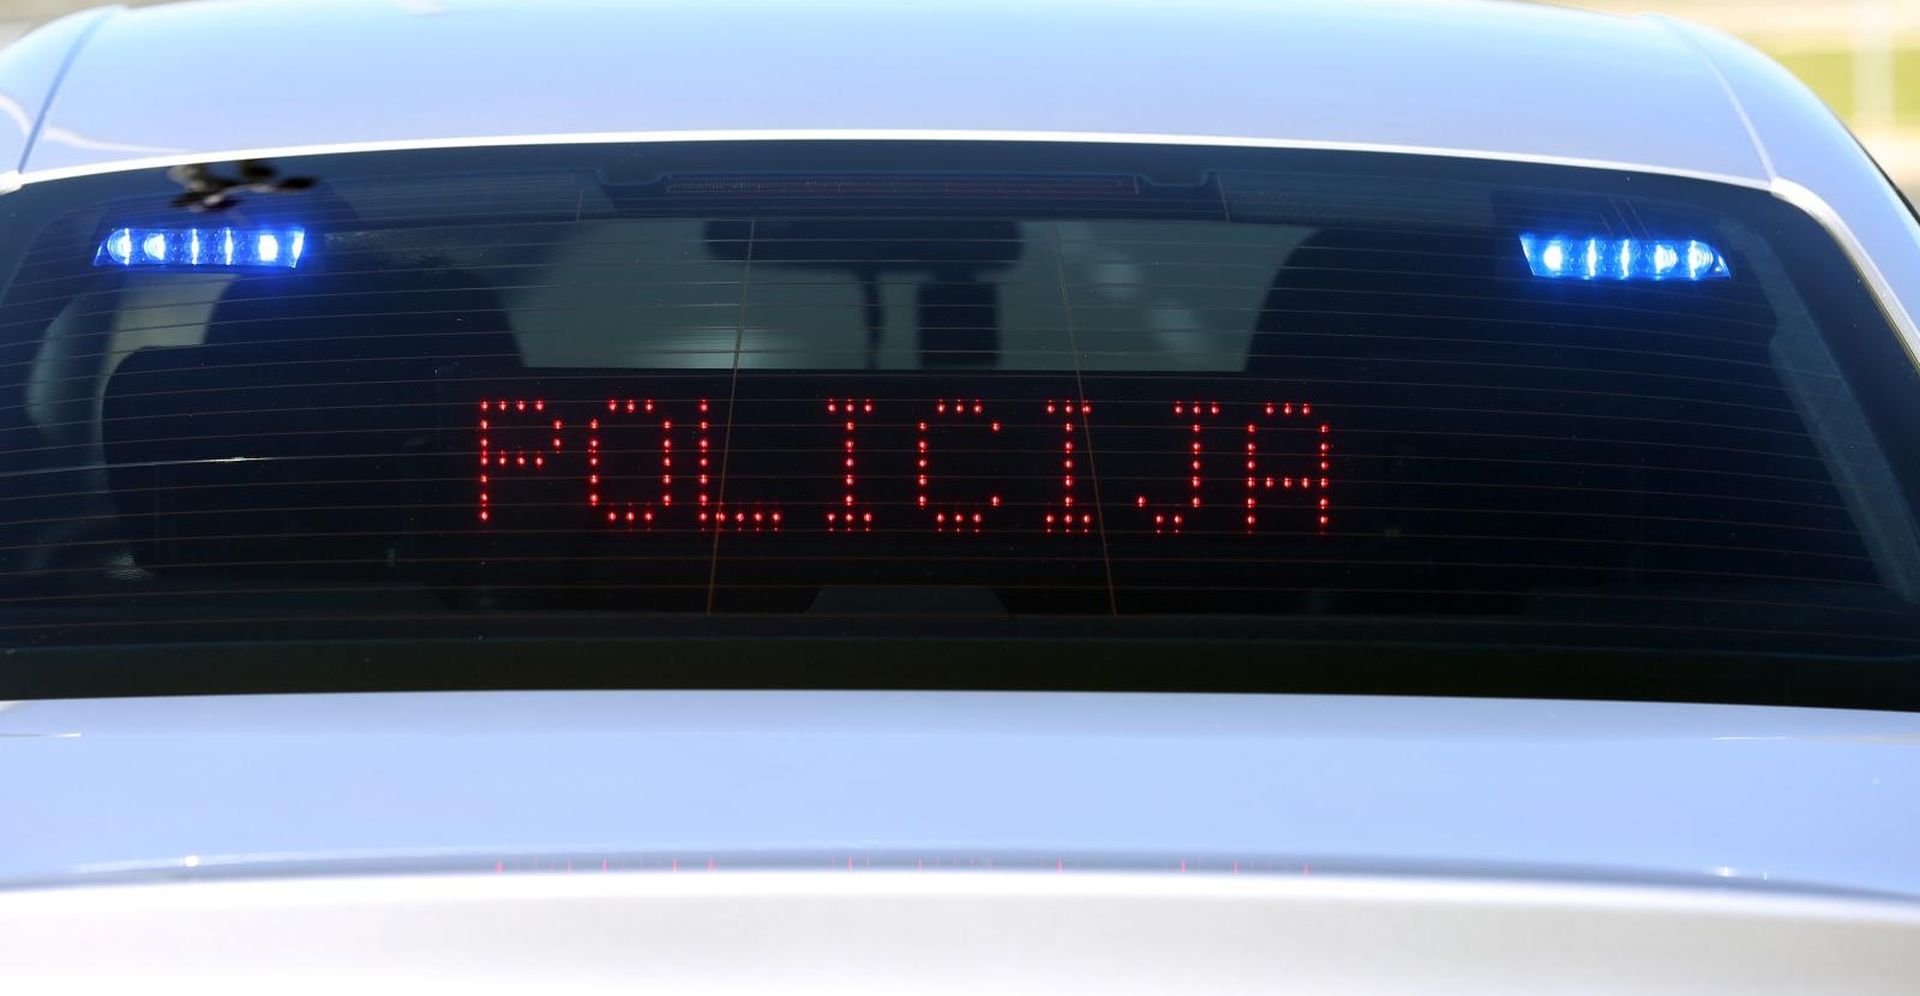 18.10.2017., Pirovac - Na auto cesti D-1 policija provodi akciju 24-satnog pojacanog nadzora brzine s presretacima. 
Photo: Dusko Jaramaz/PIXSELL